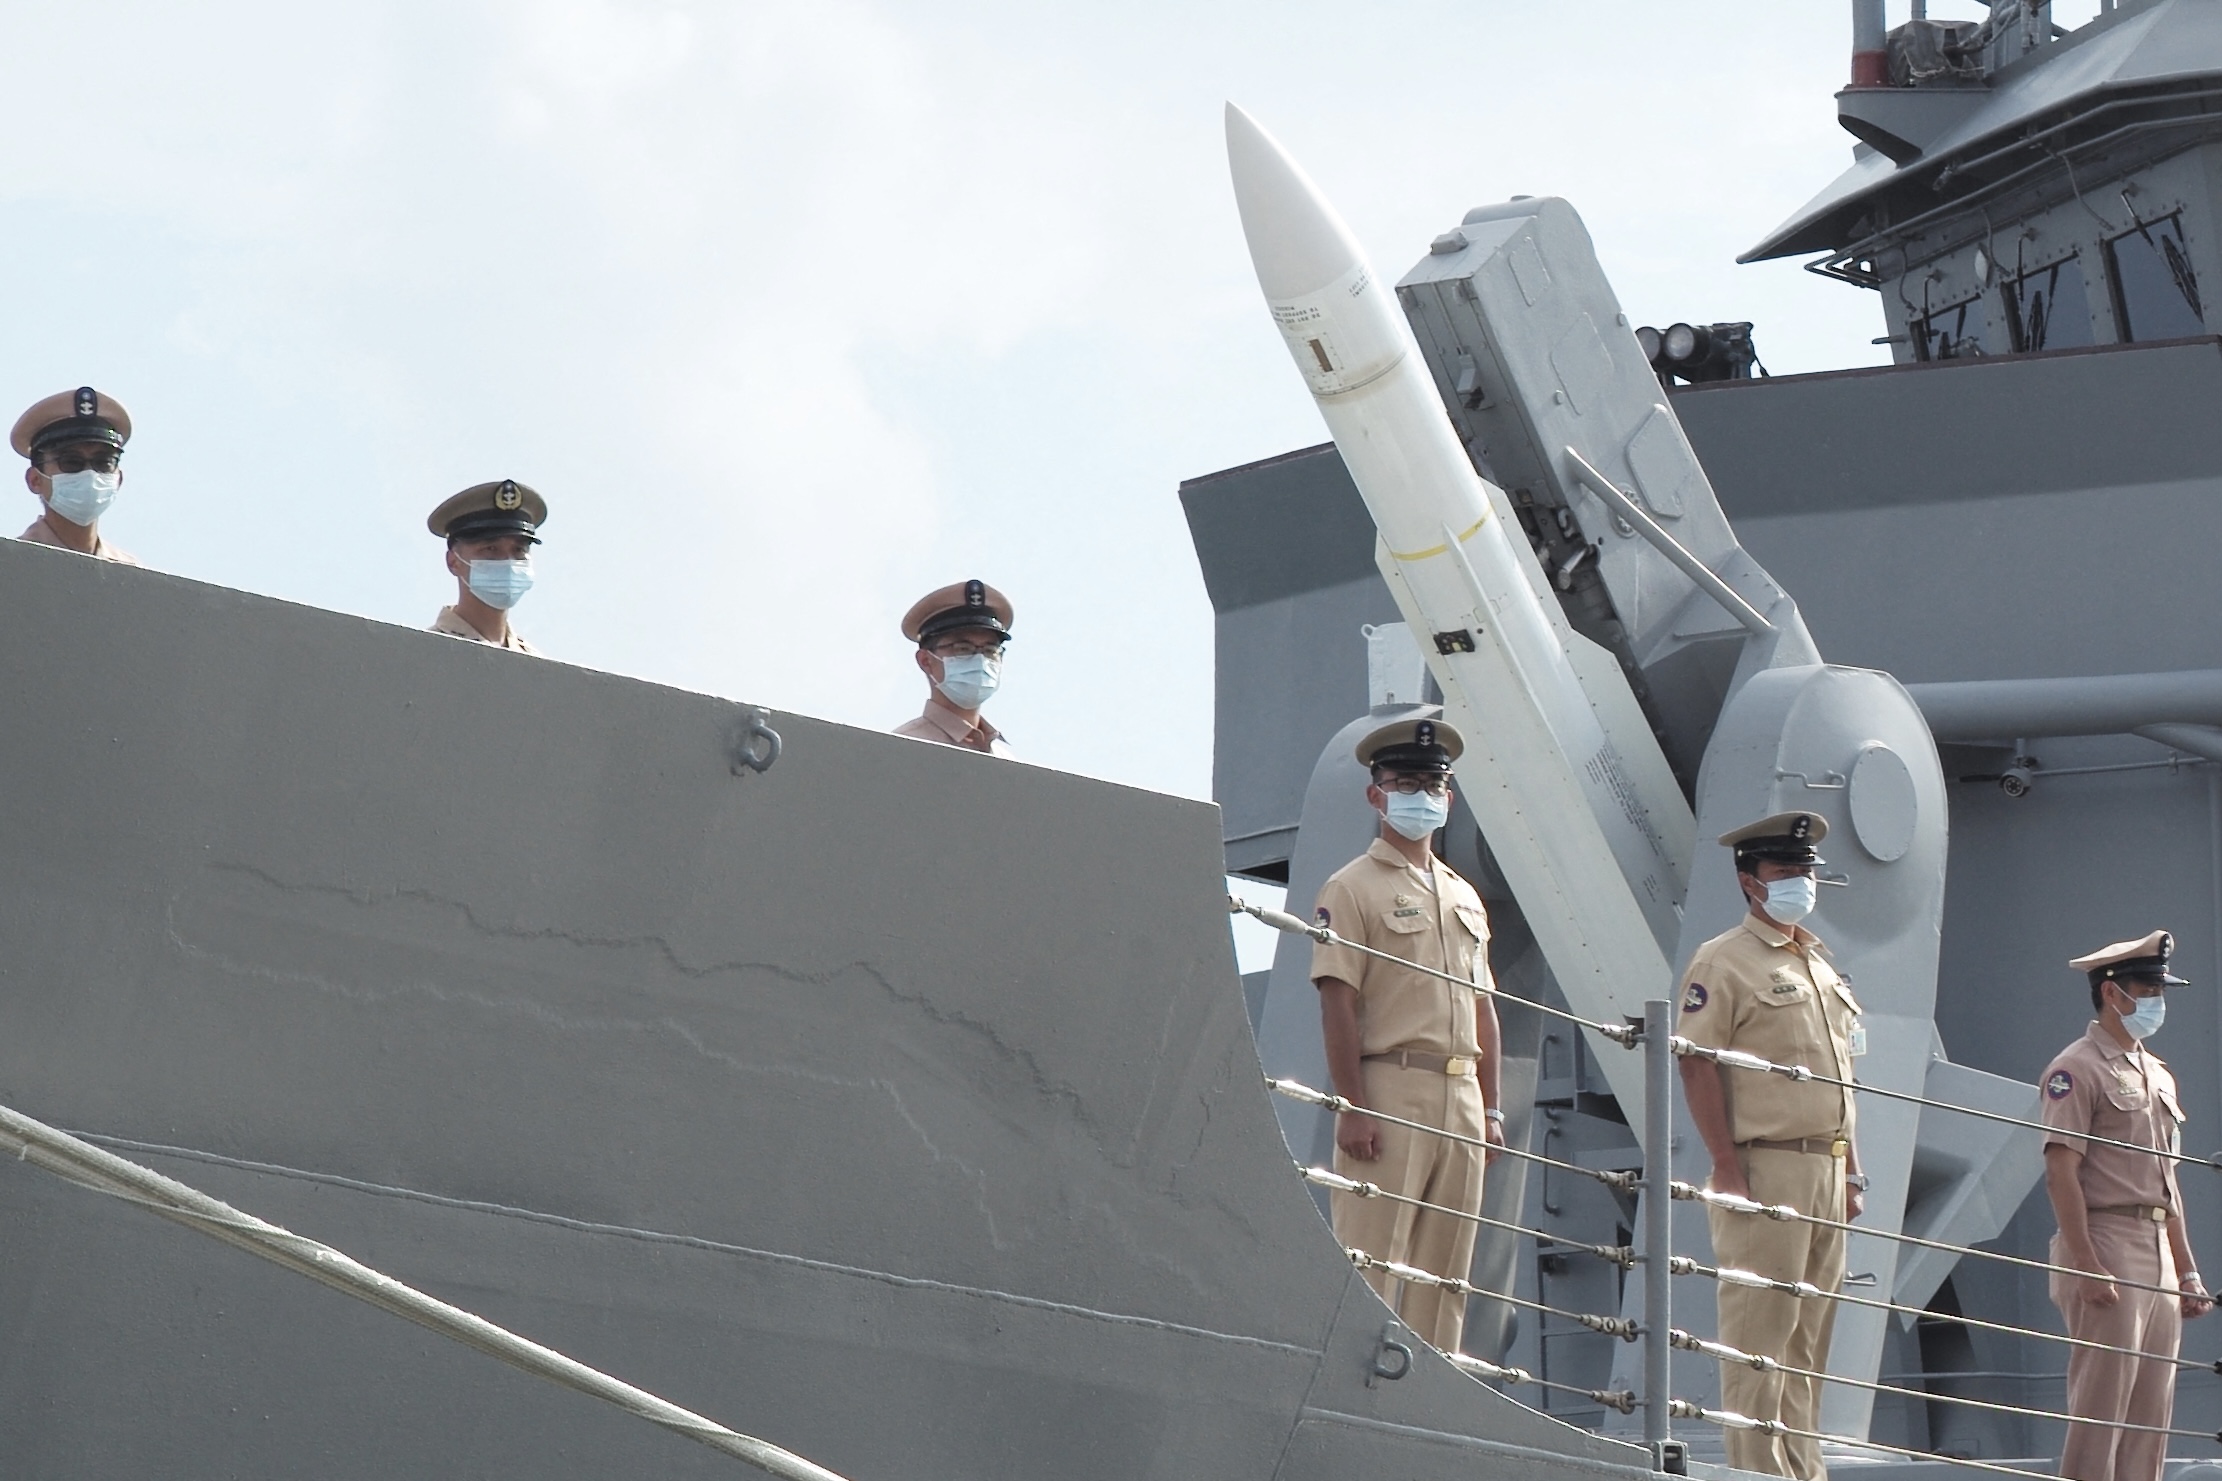 Les médias d’État chinois lancent un avertissement inquiétant aux États-Unis concernant leur projet de missile dans le Pacifique